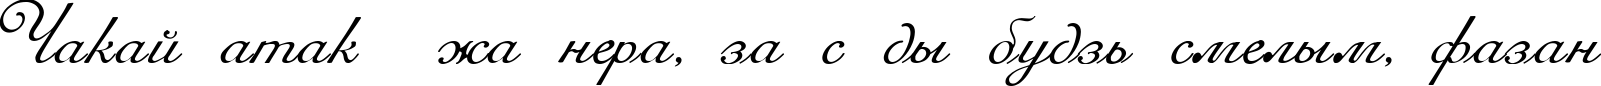 Пример написания шрифтом Romana Script текста на белорусском